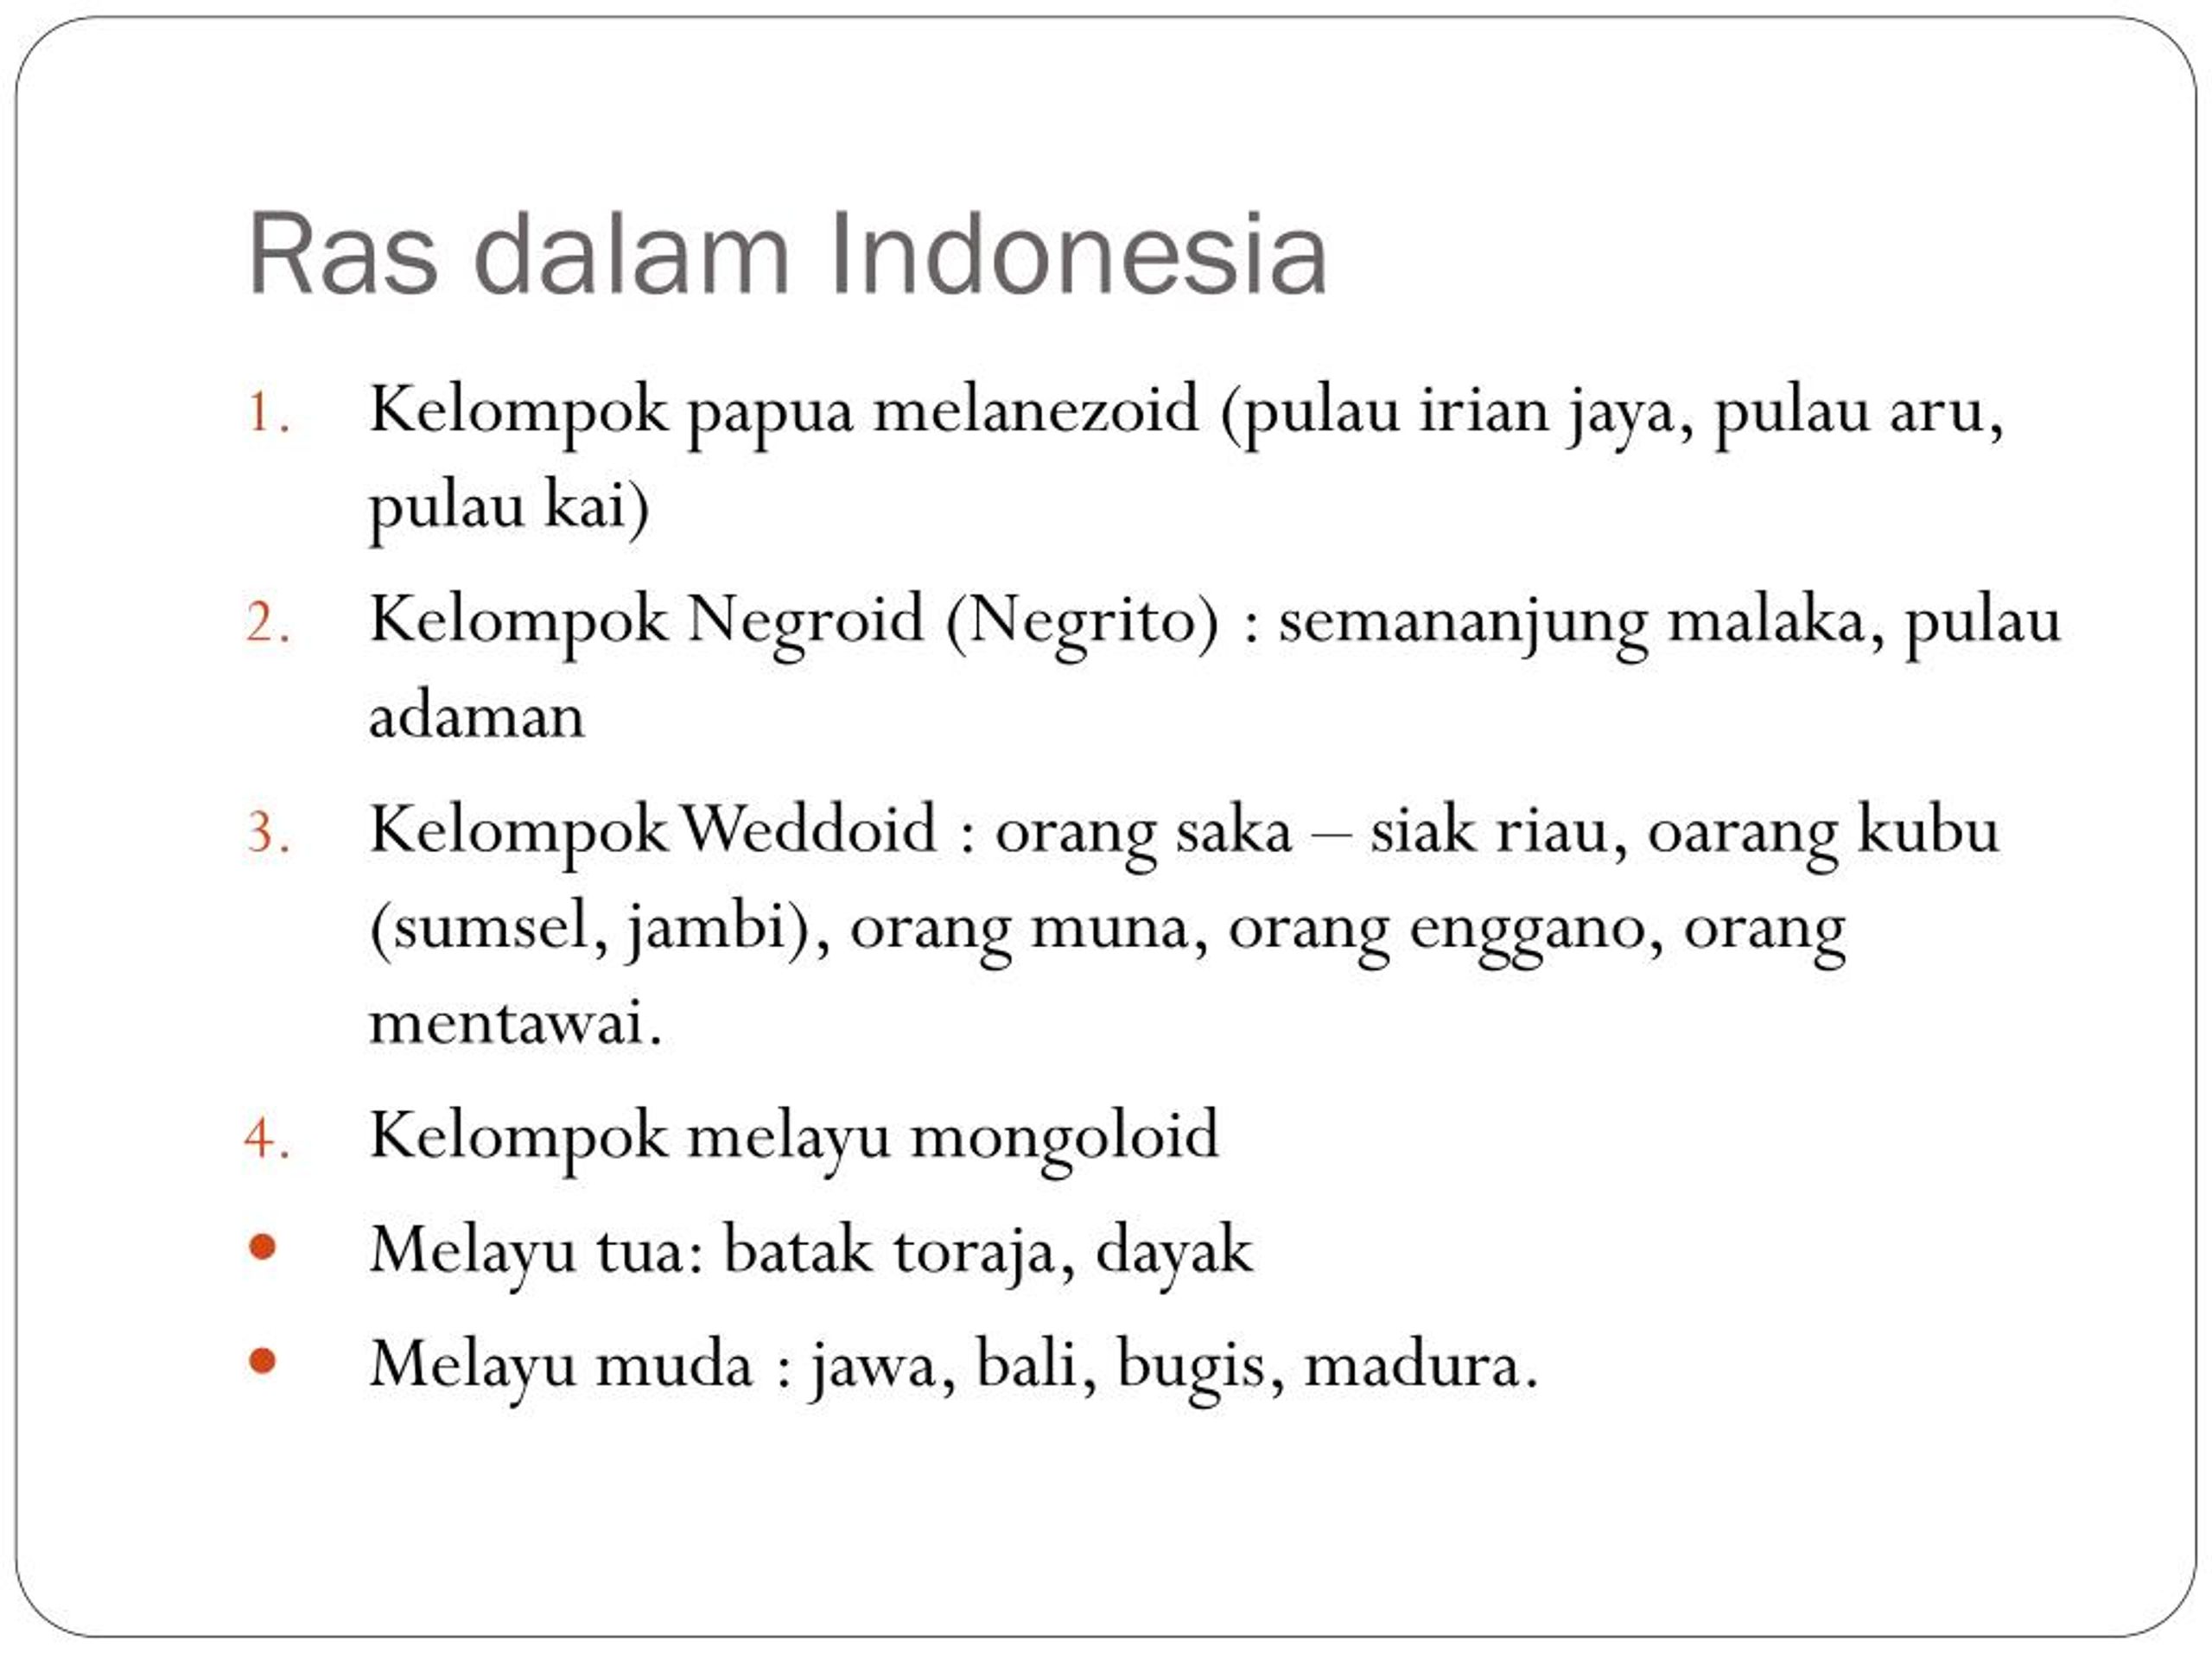 Papua pulau aru pulau kai termasuk dalam kelompok ras